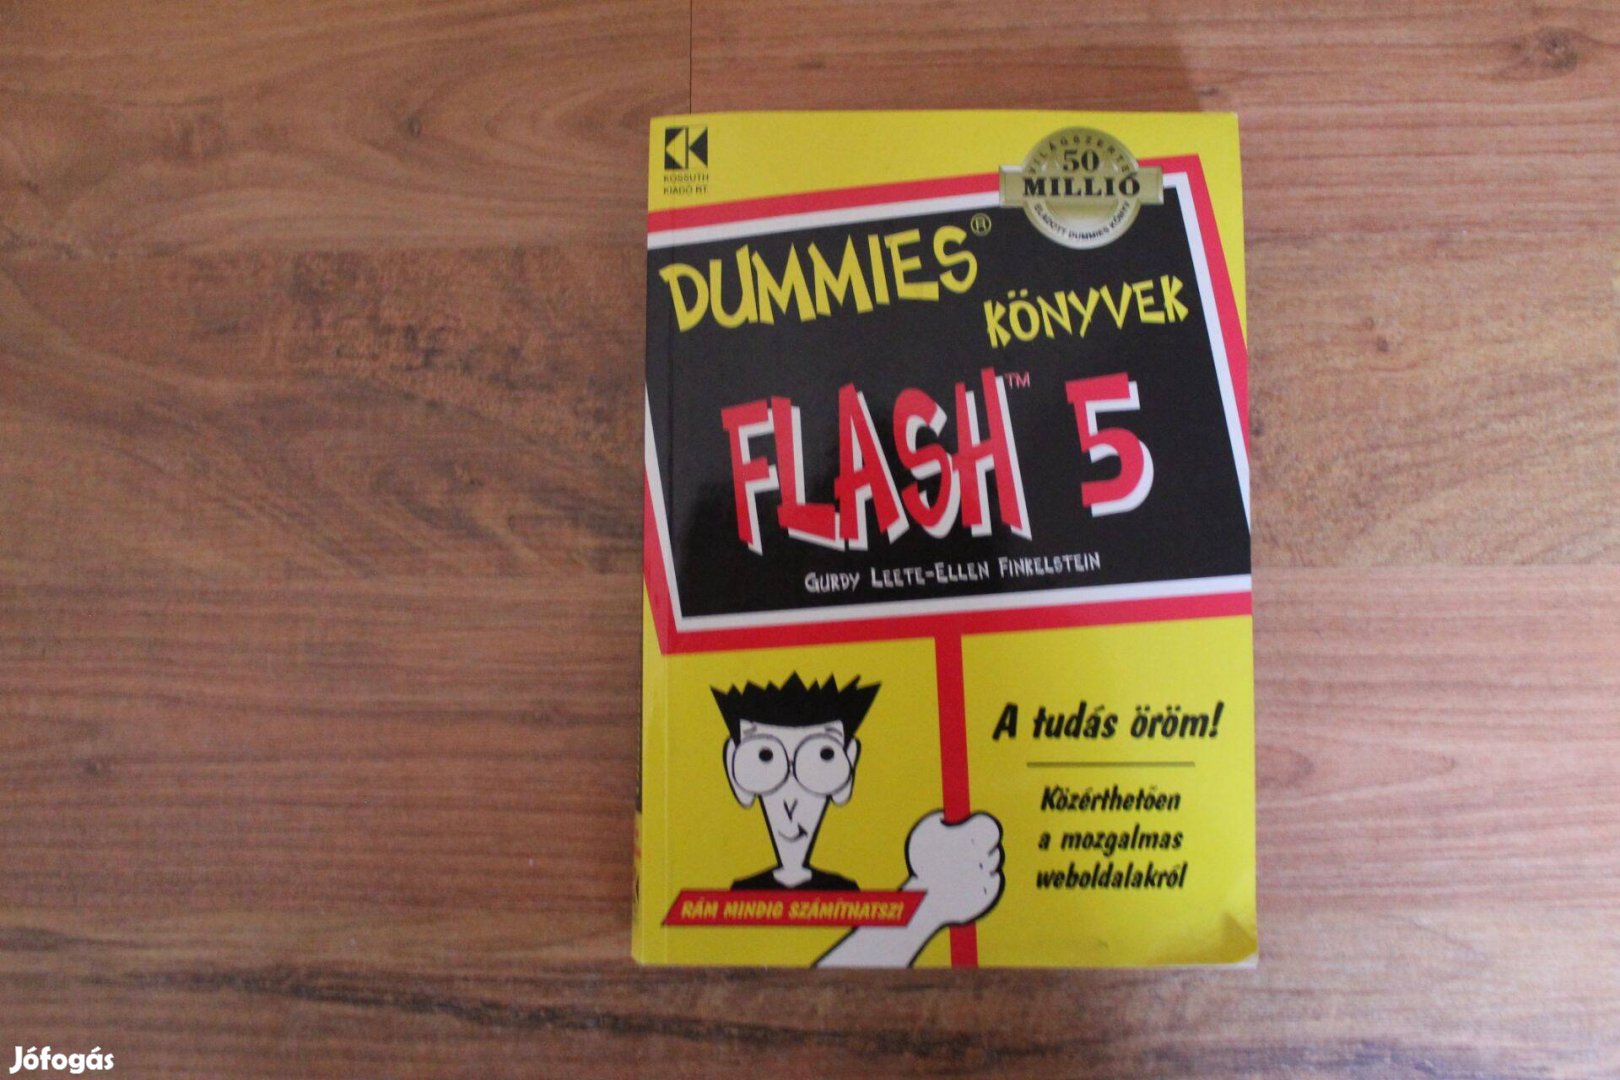 Dummies könyvek Flash 5